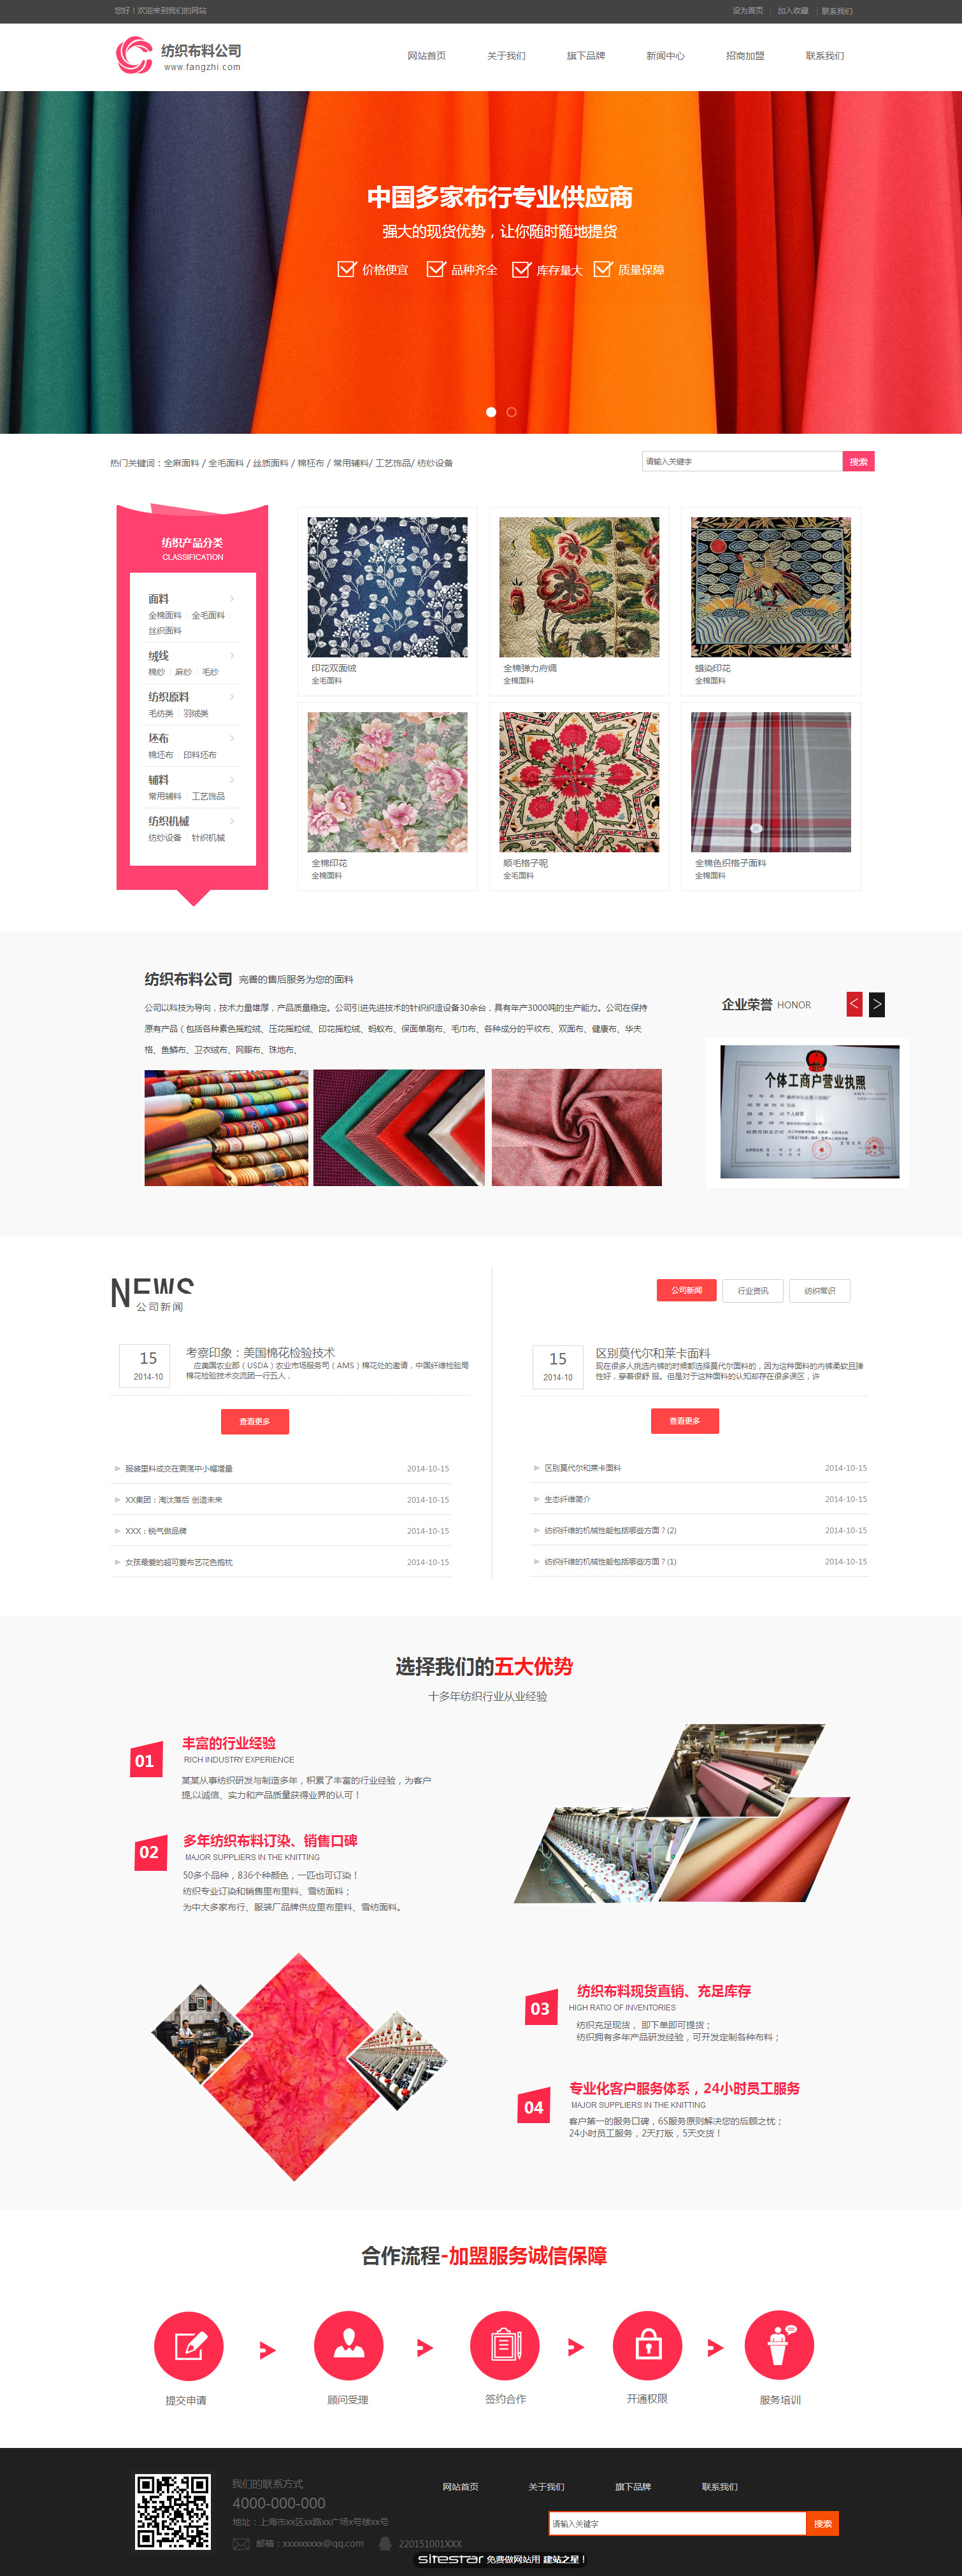 企业网站精美模板-textile-1112683